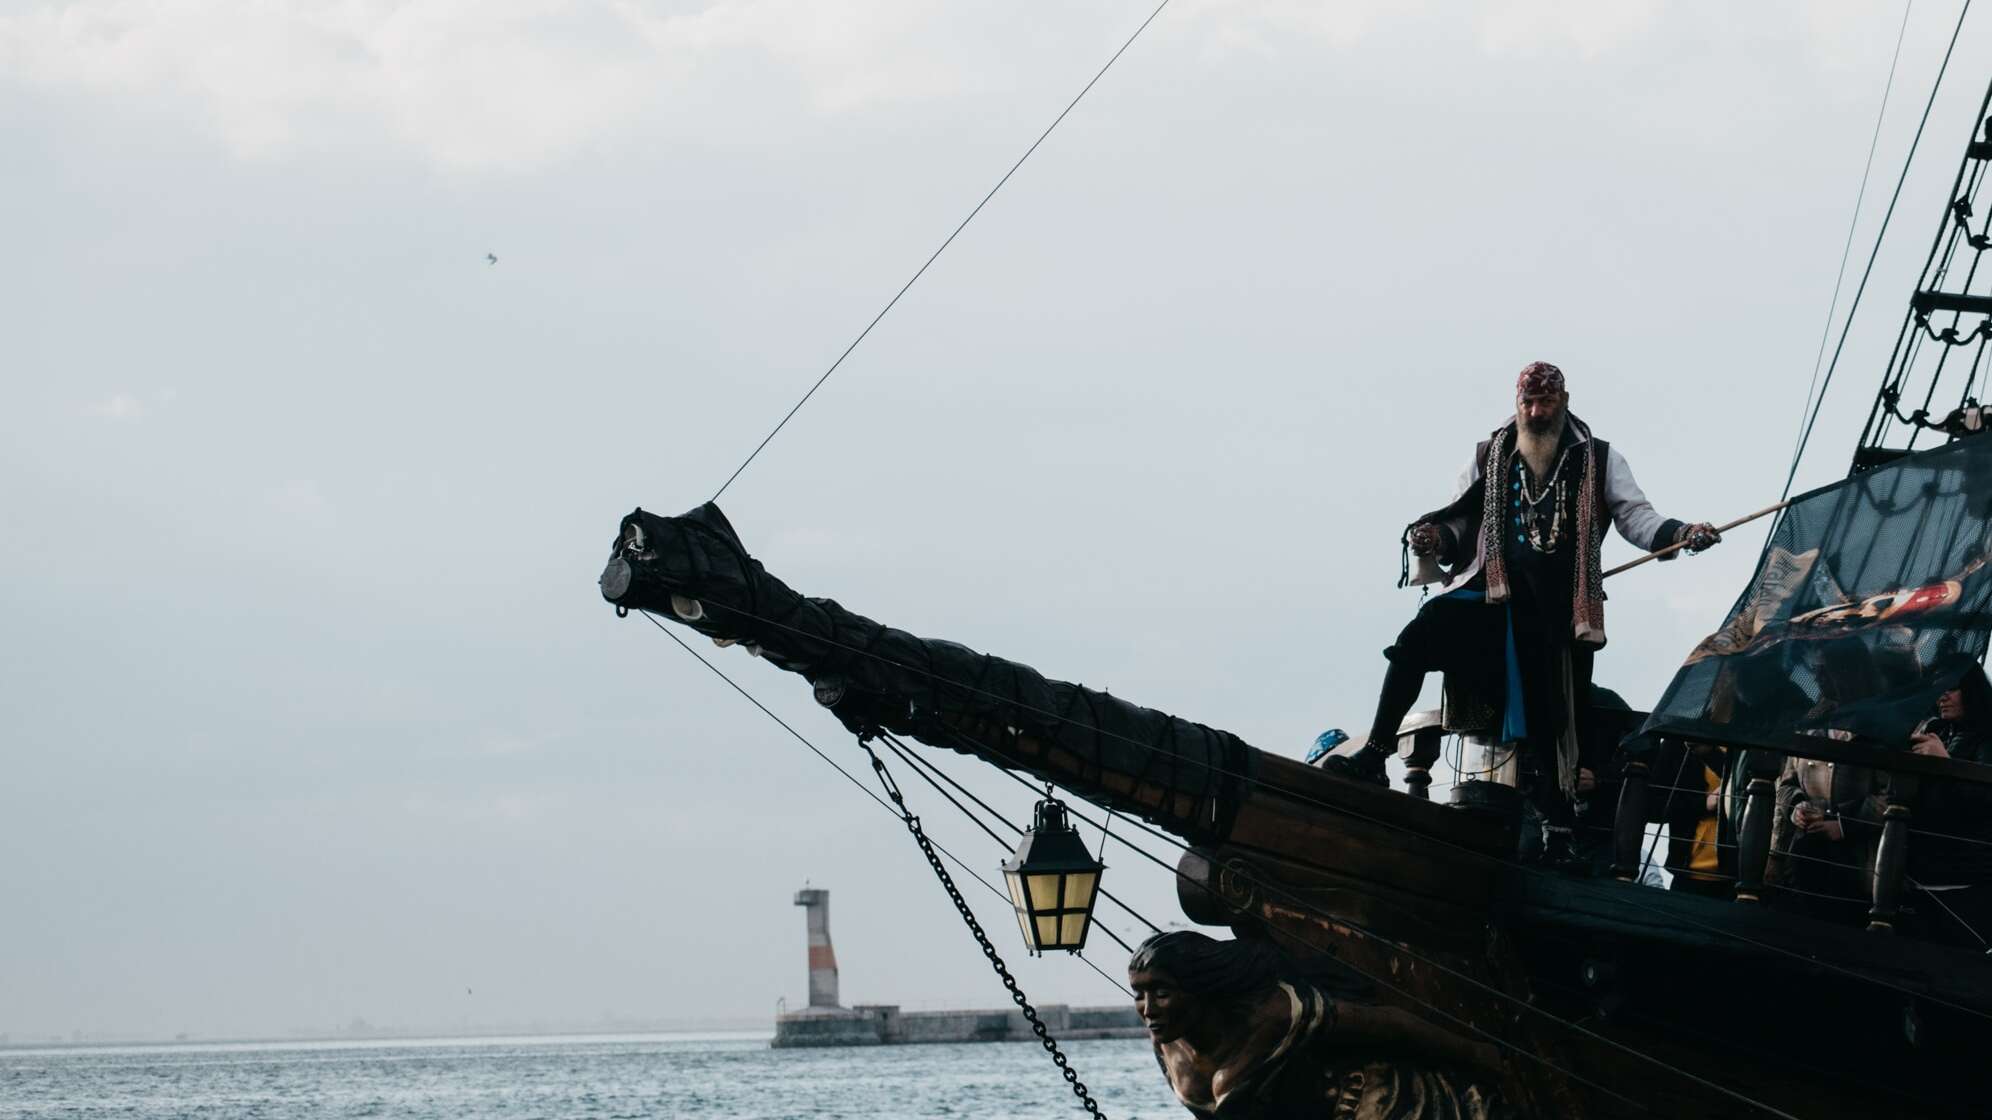 Piraten Schiff auf offener See